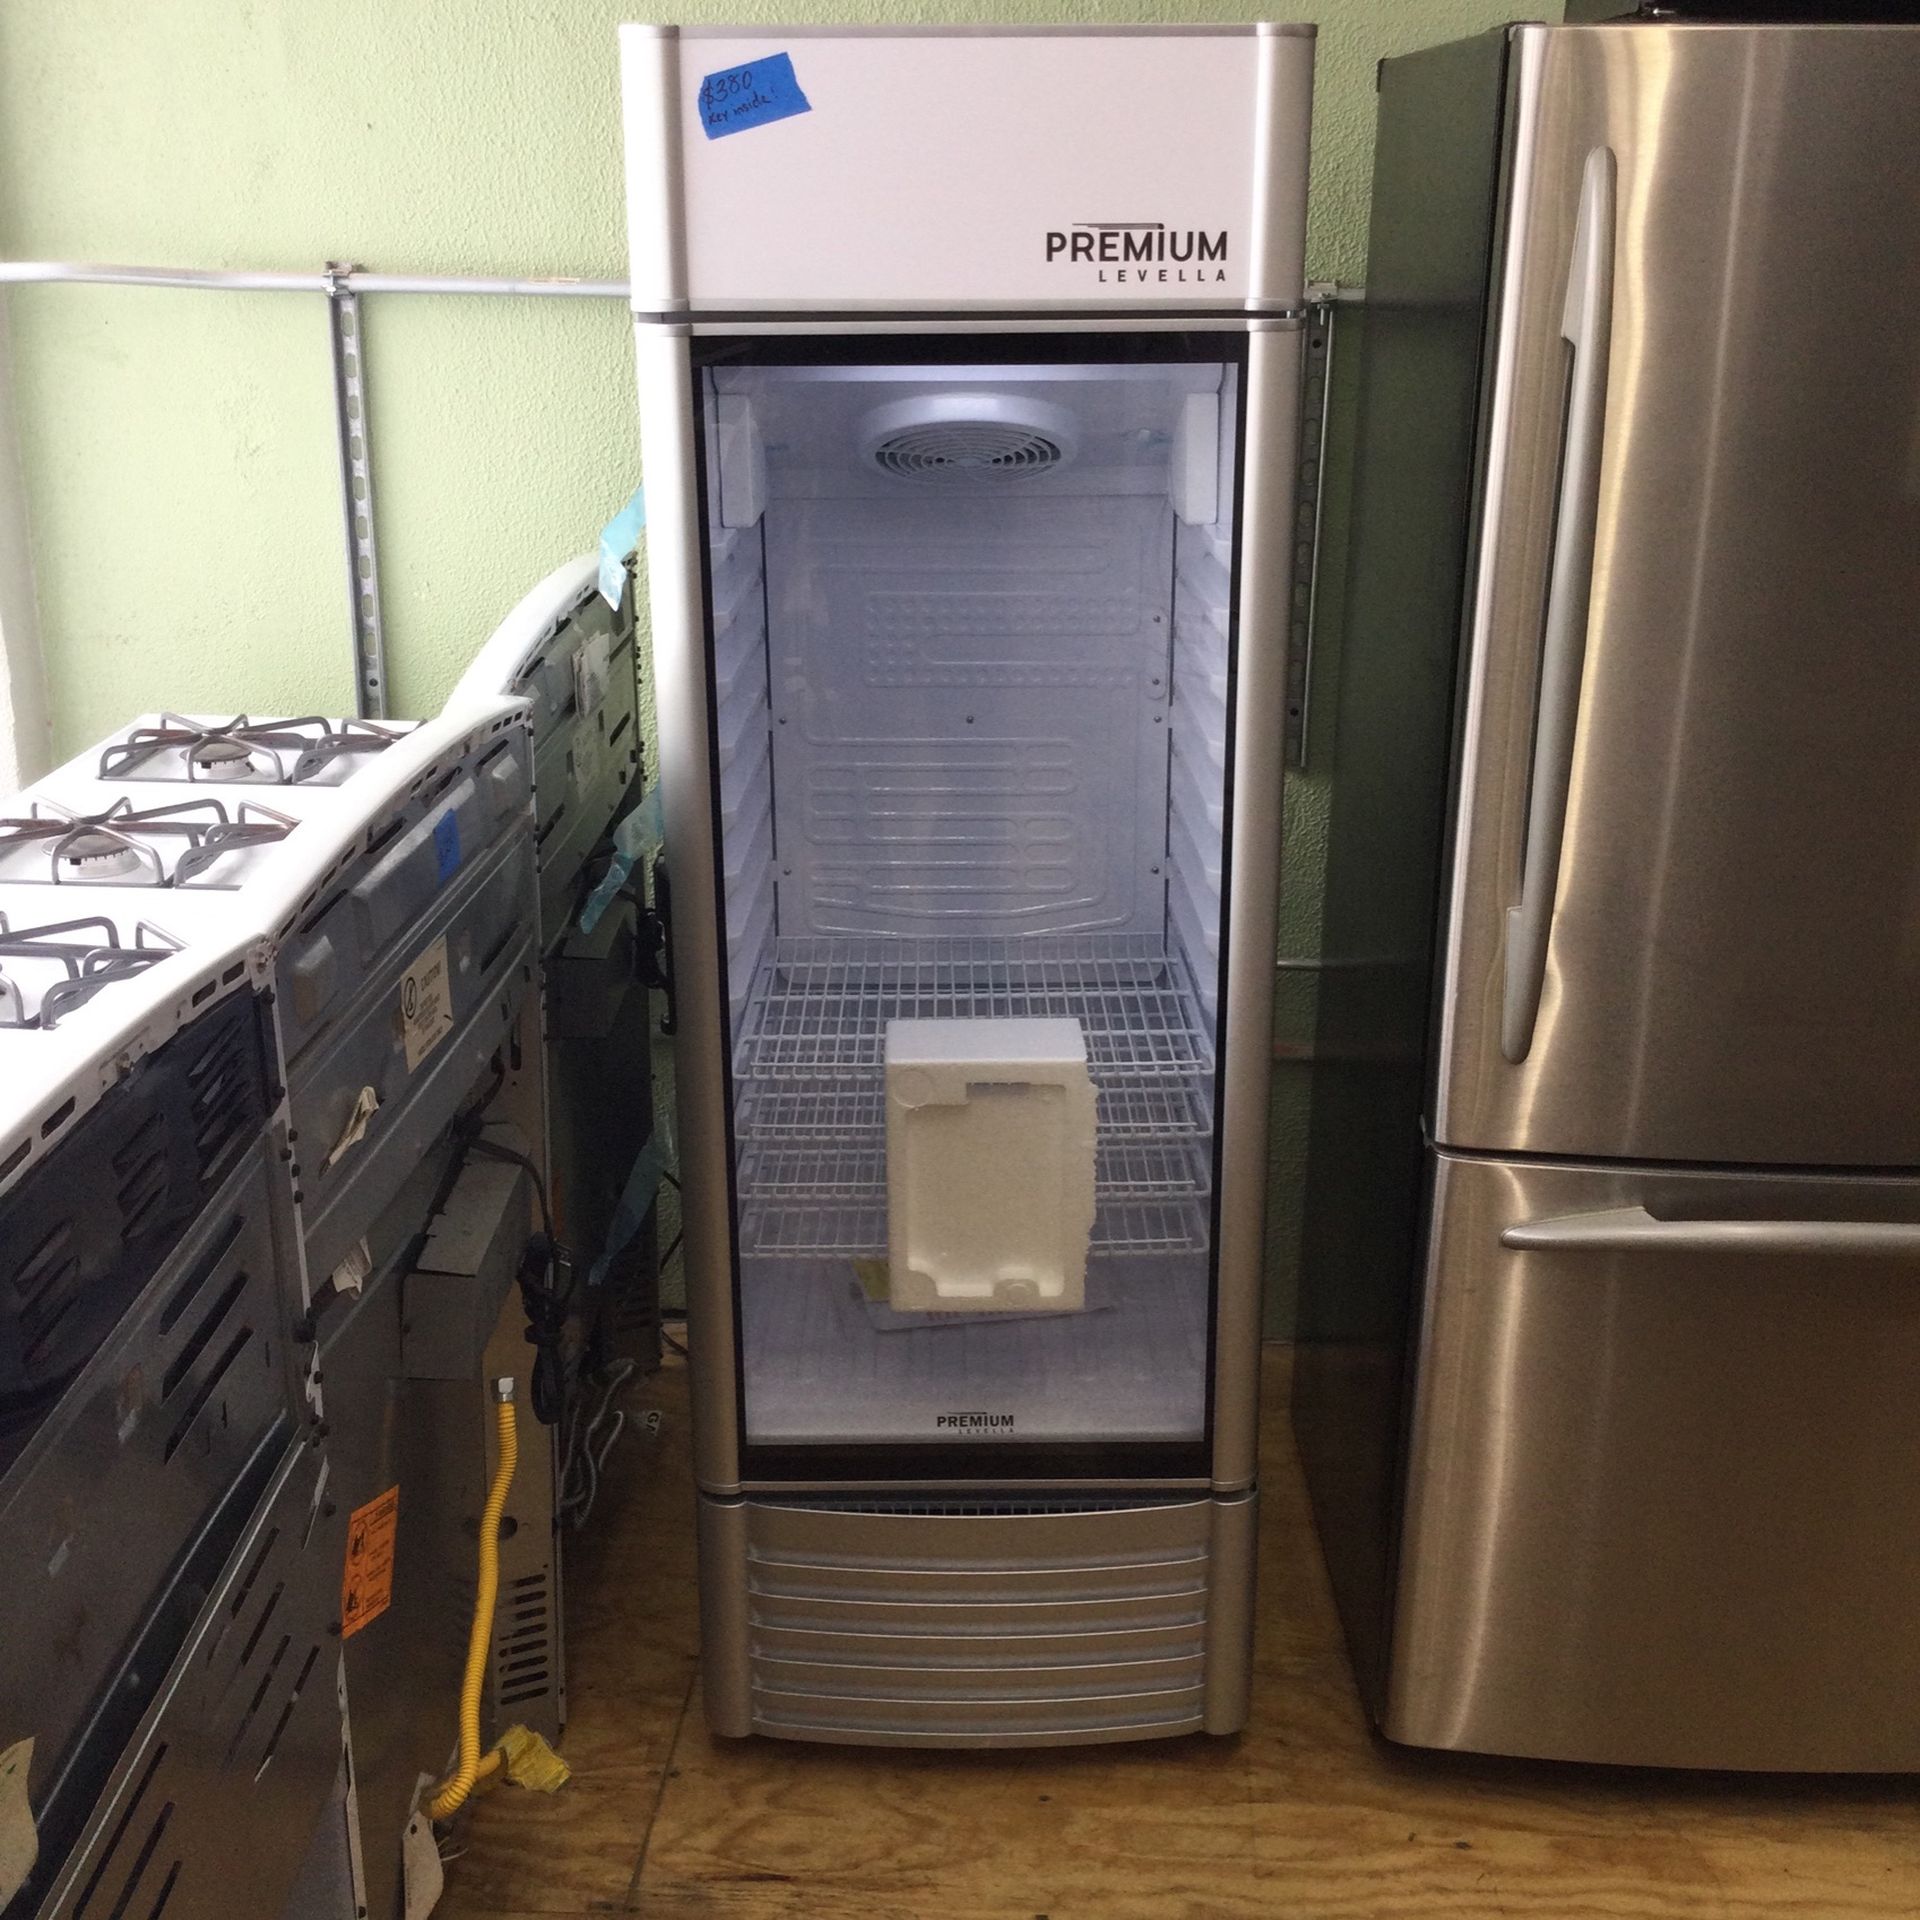 Premium Levella Refrigerator